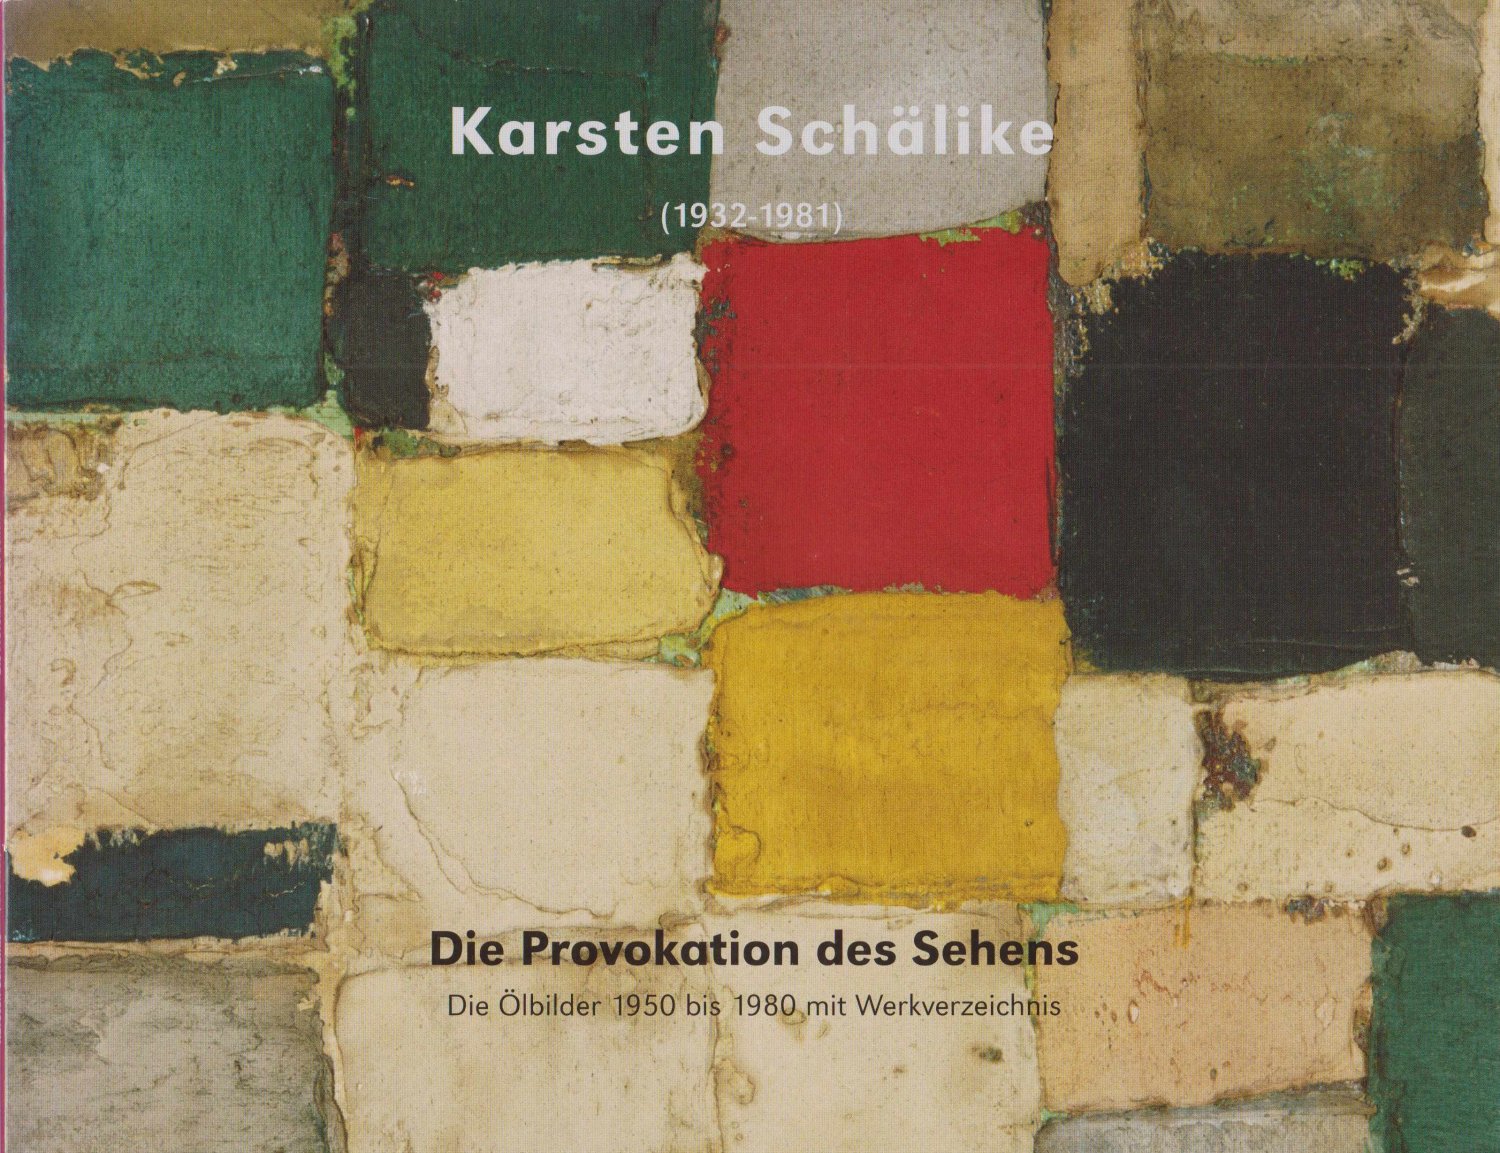 SCHÄLIKE, Karsten:  Karsten Schälike. (1932 - 1981). Die Provokation des Sehens. Die Ölbilder 1950 bis 1980 mit Werkverzeichnis. 